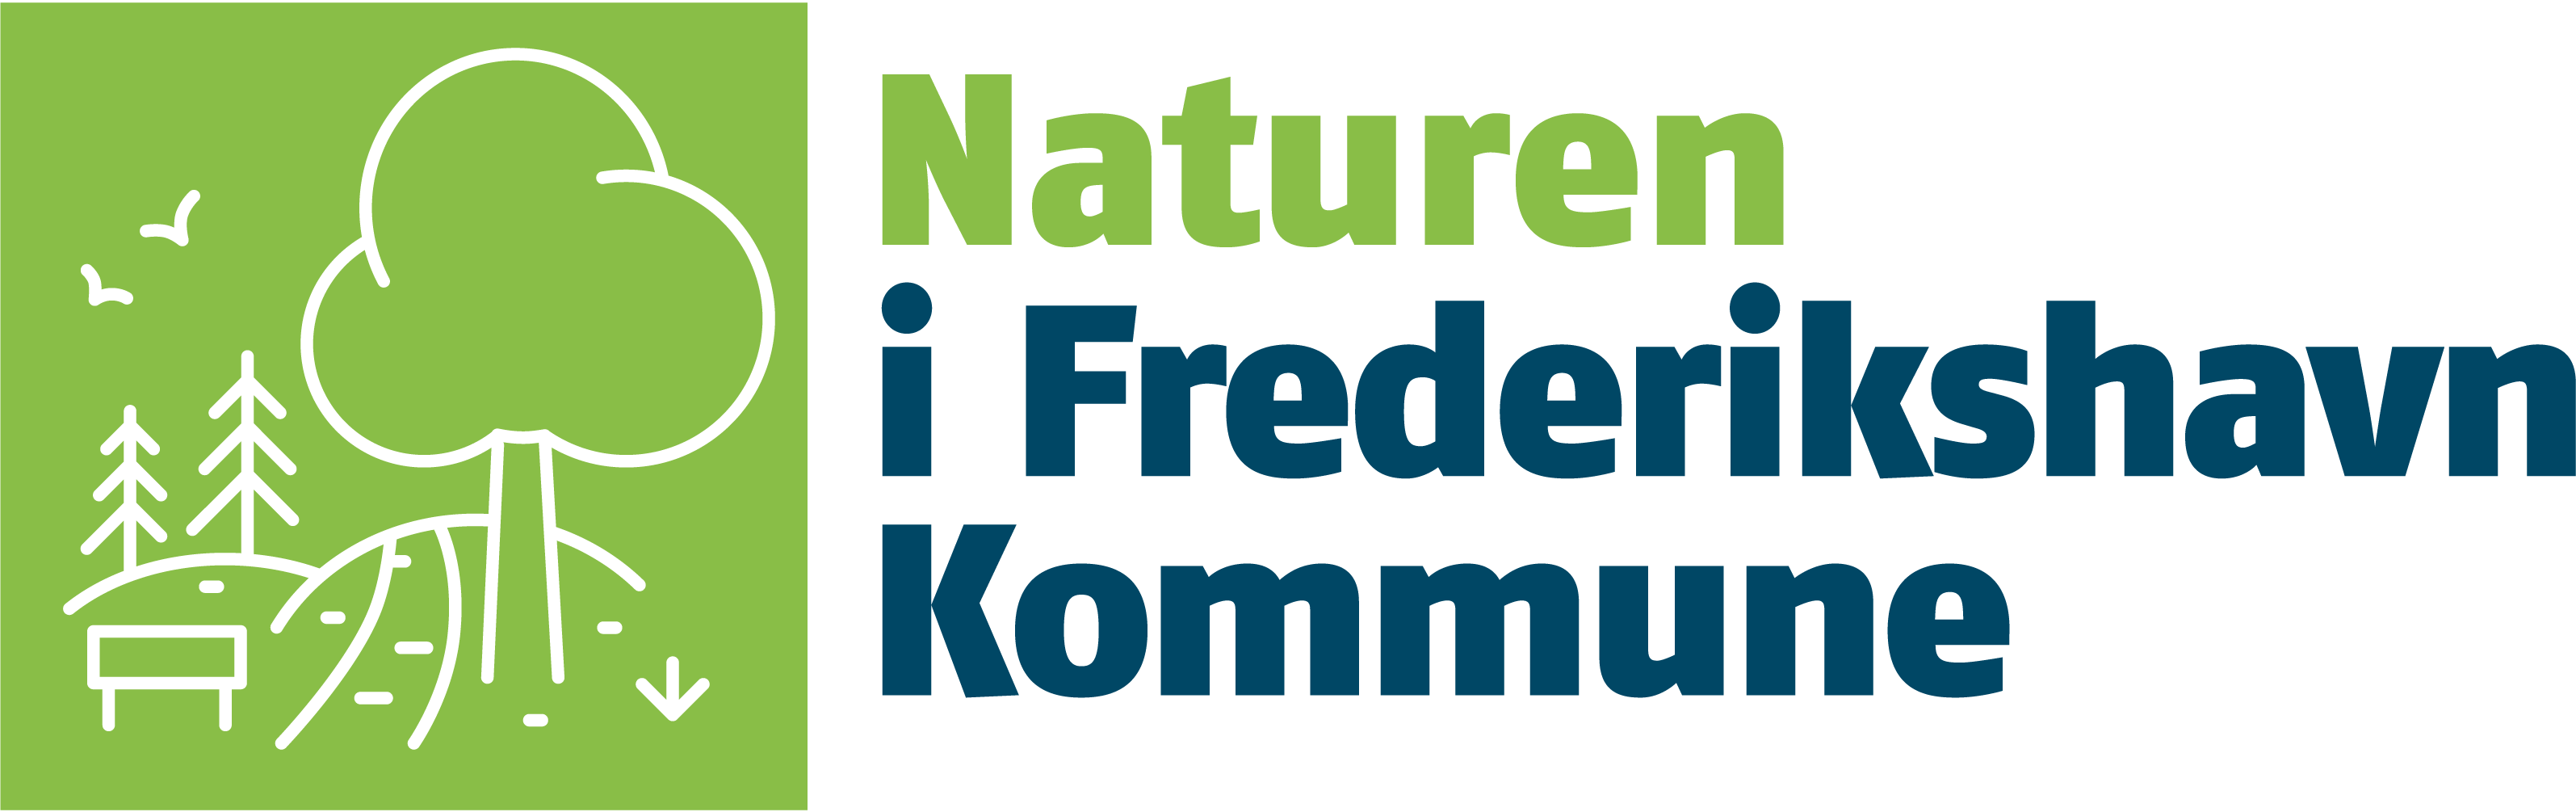 Naturen i Frederikshavn Kommune